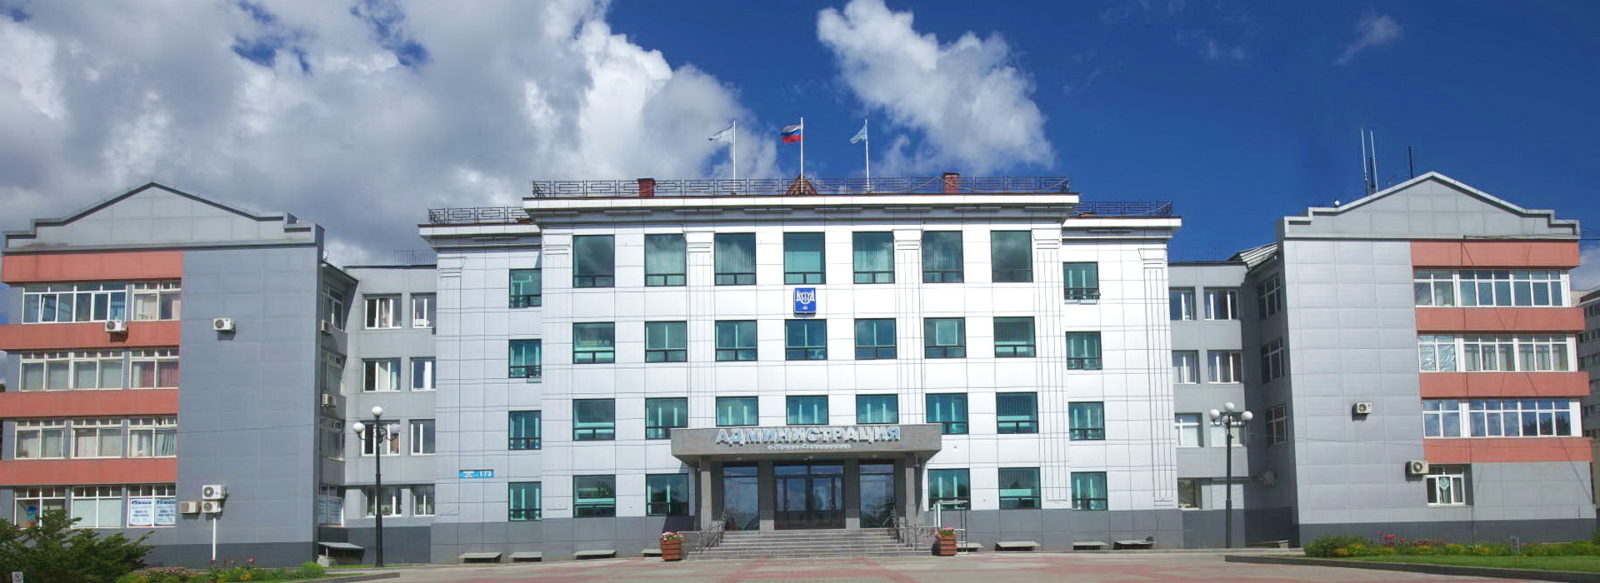 Южно-Сахалинск — центр Сахалинской области и самый большой город на острове